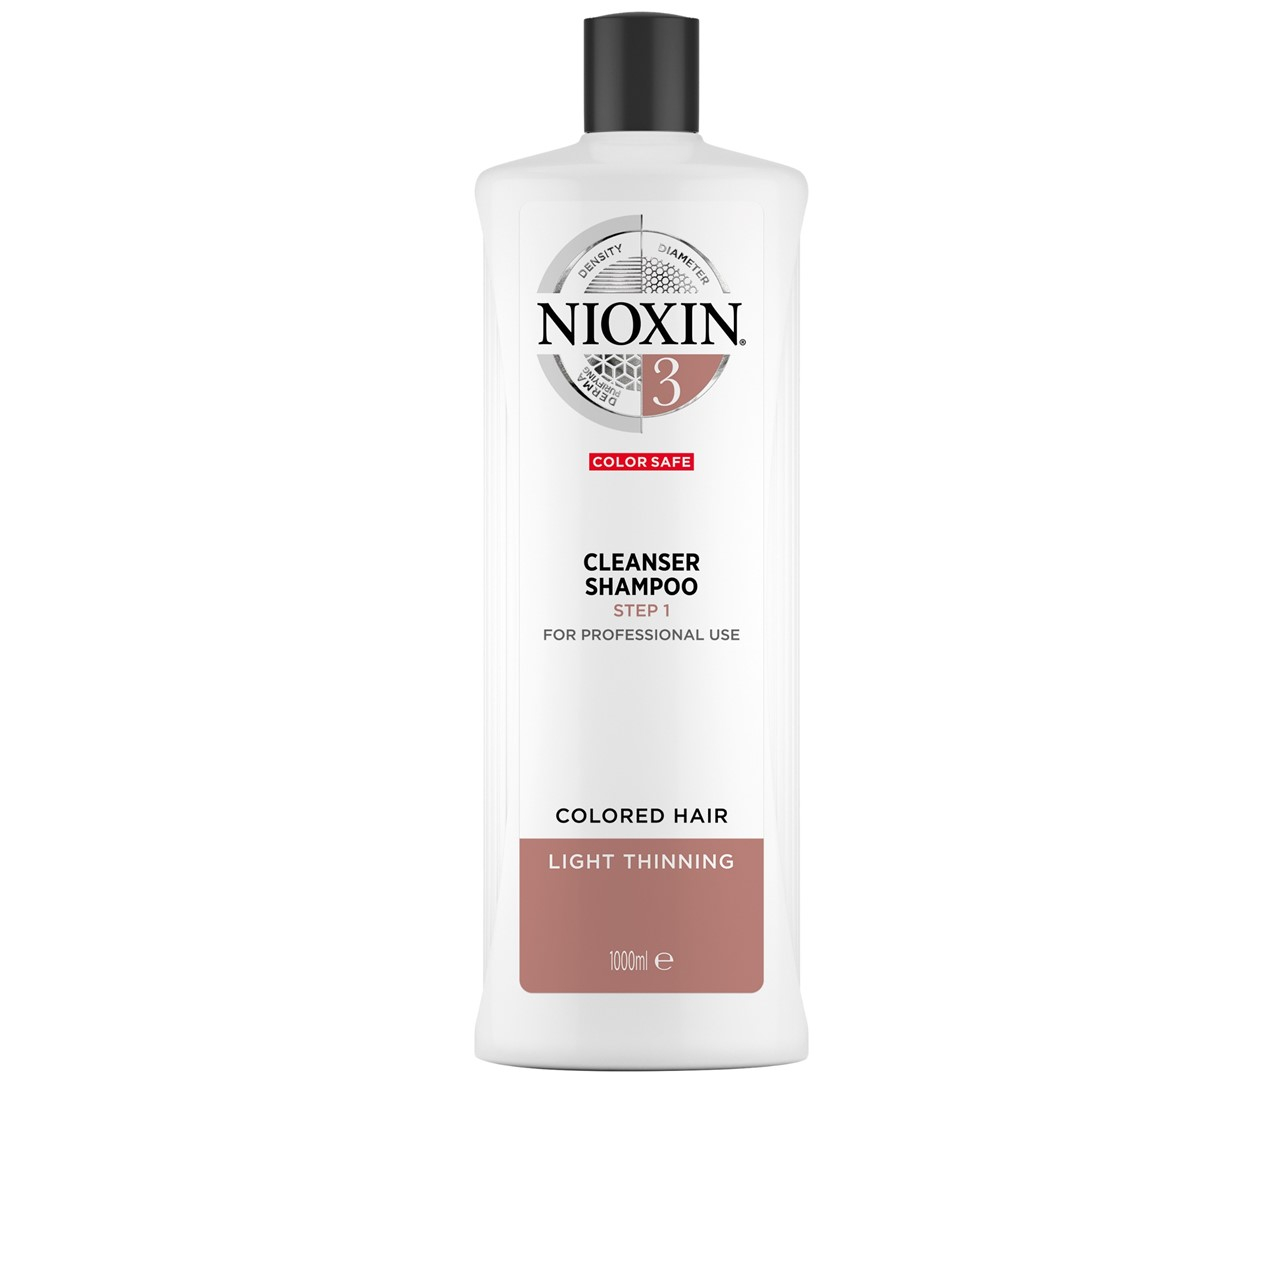 Nioxin System 3 Cleanser Shampoo 1L (33.81fl oz)